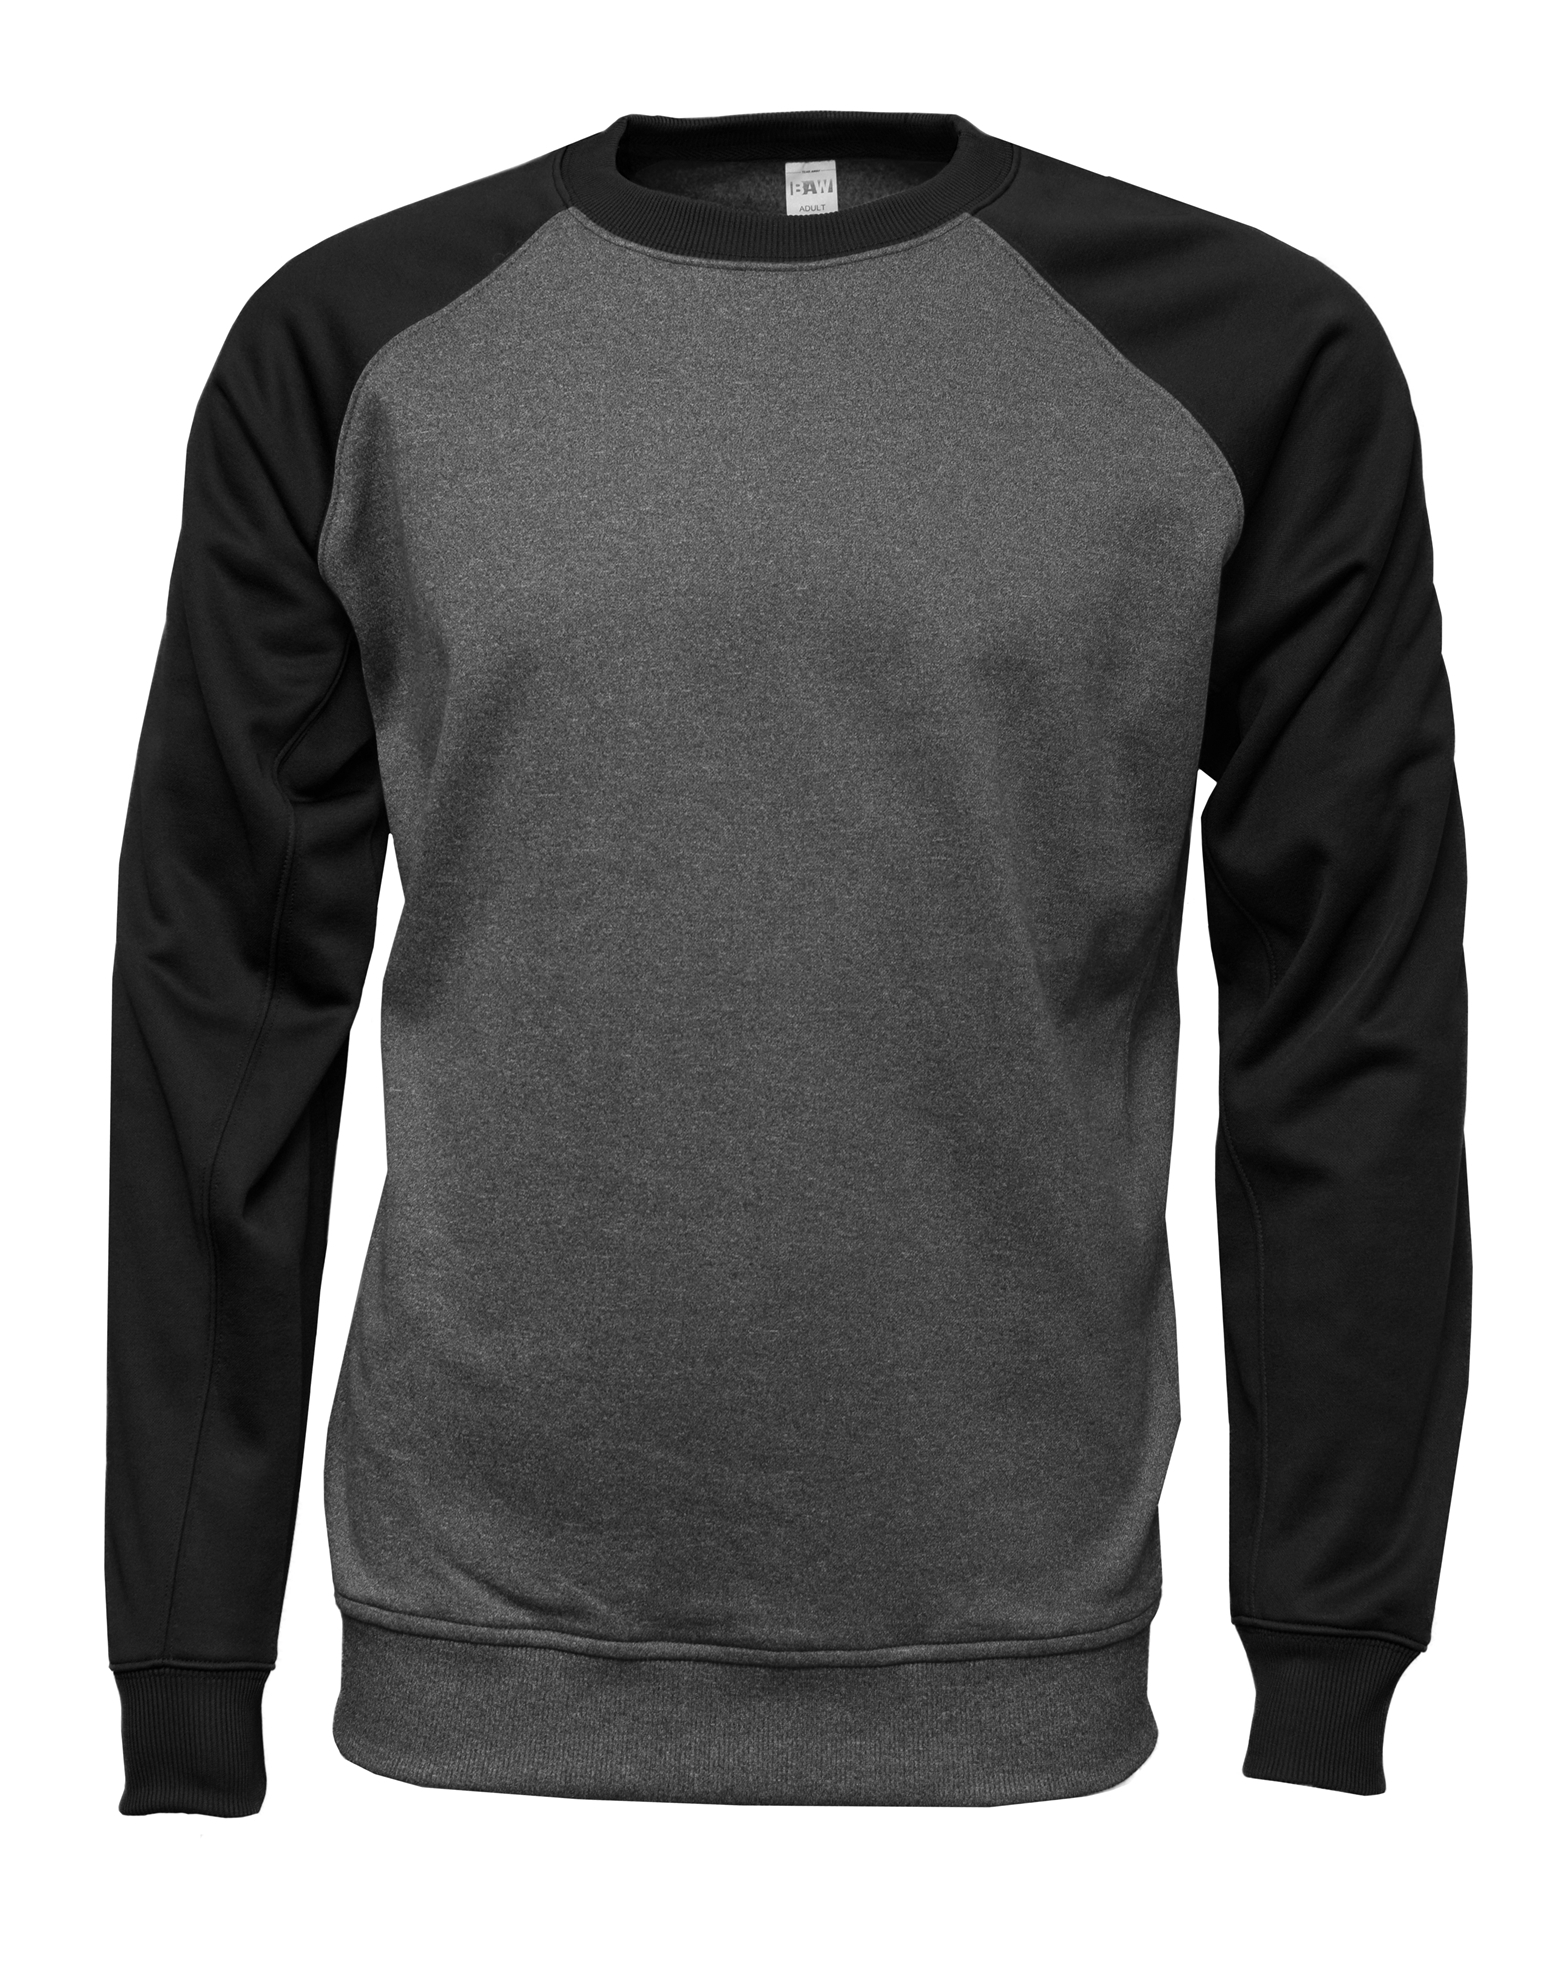 BAW Athletic Wear F270Y - Youth Raglan Crewneck Sweatshirt